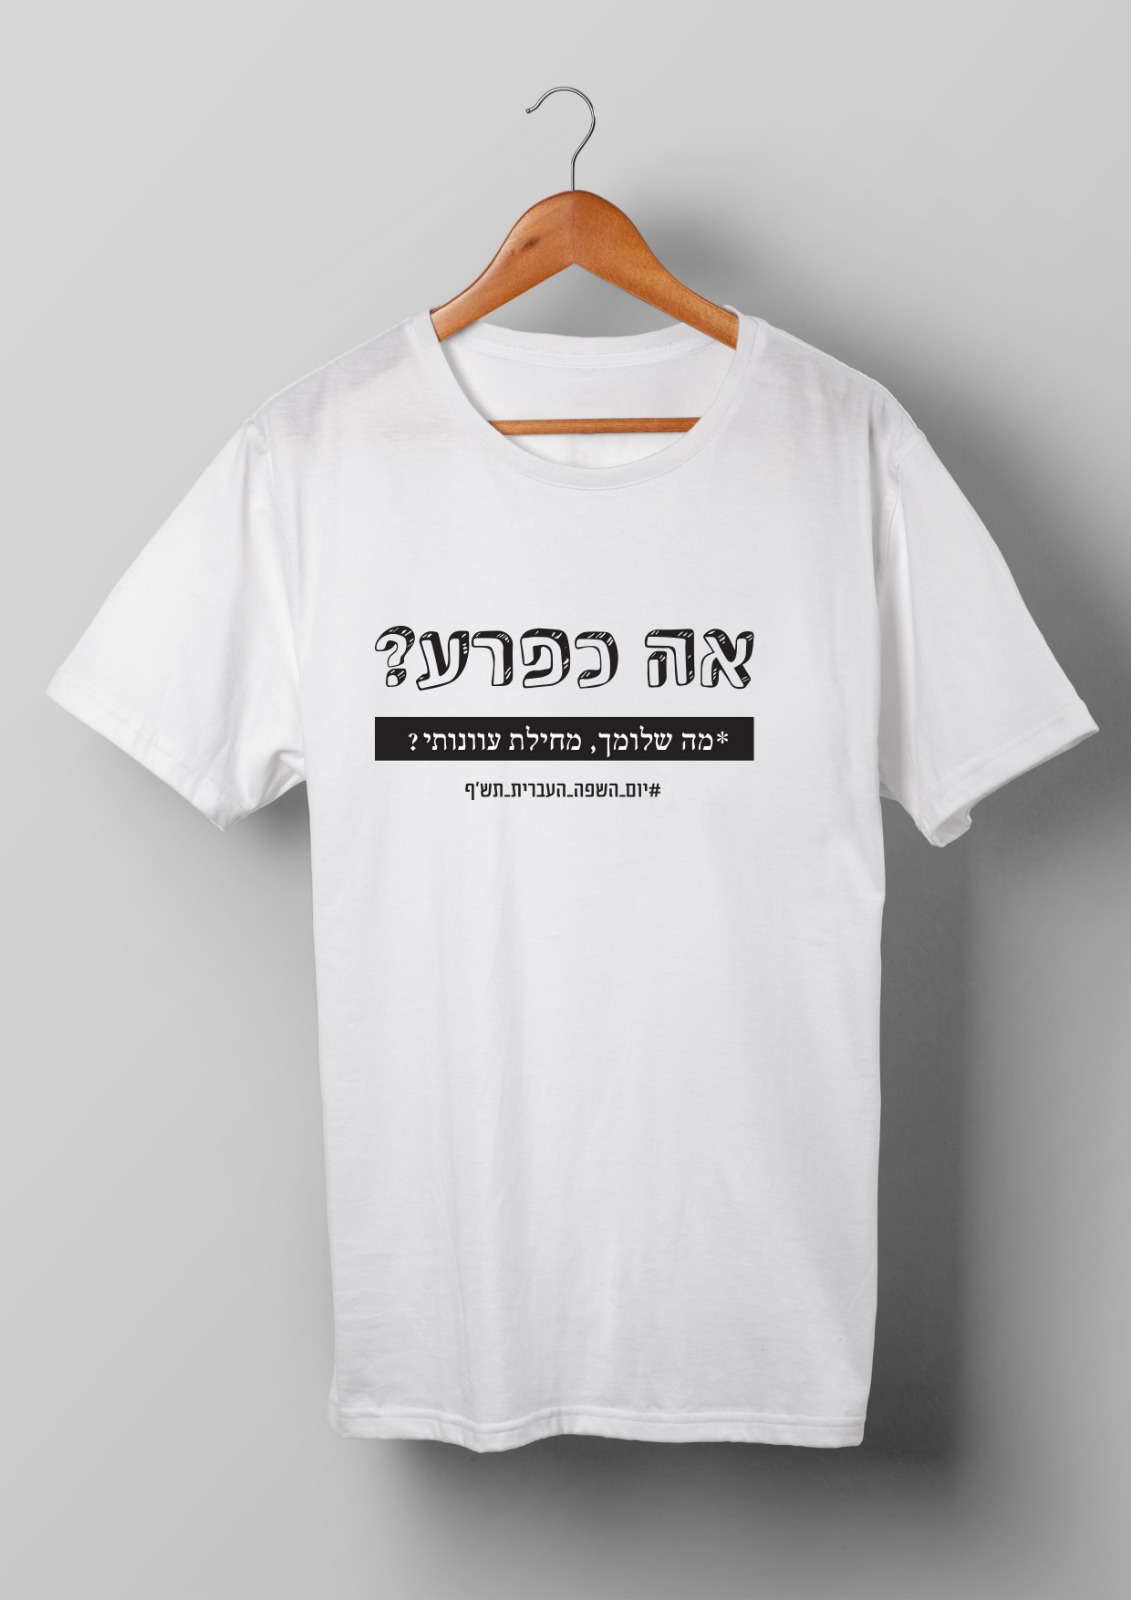 חולצות יום השפה העברית תש"ף בעיצוב סטודנטיות שנה ג' מהמחלקה לתקשורת חזותית במכללת אמונה